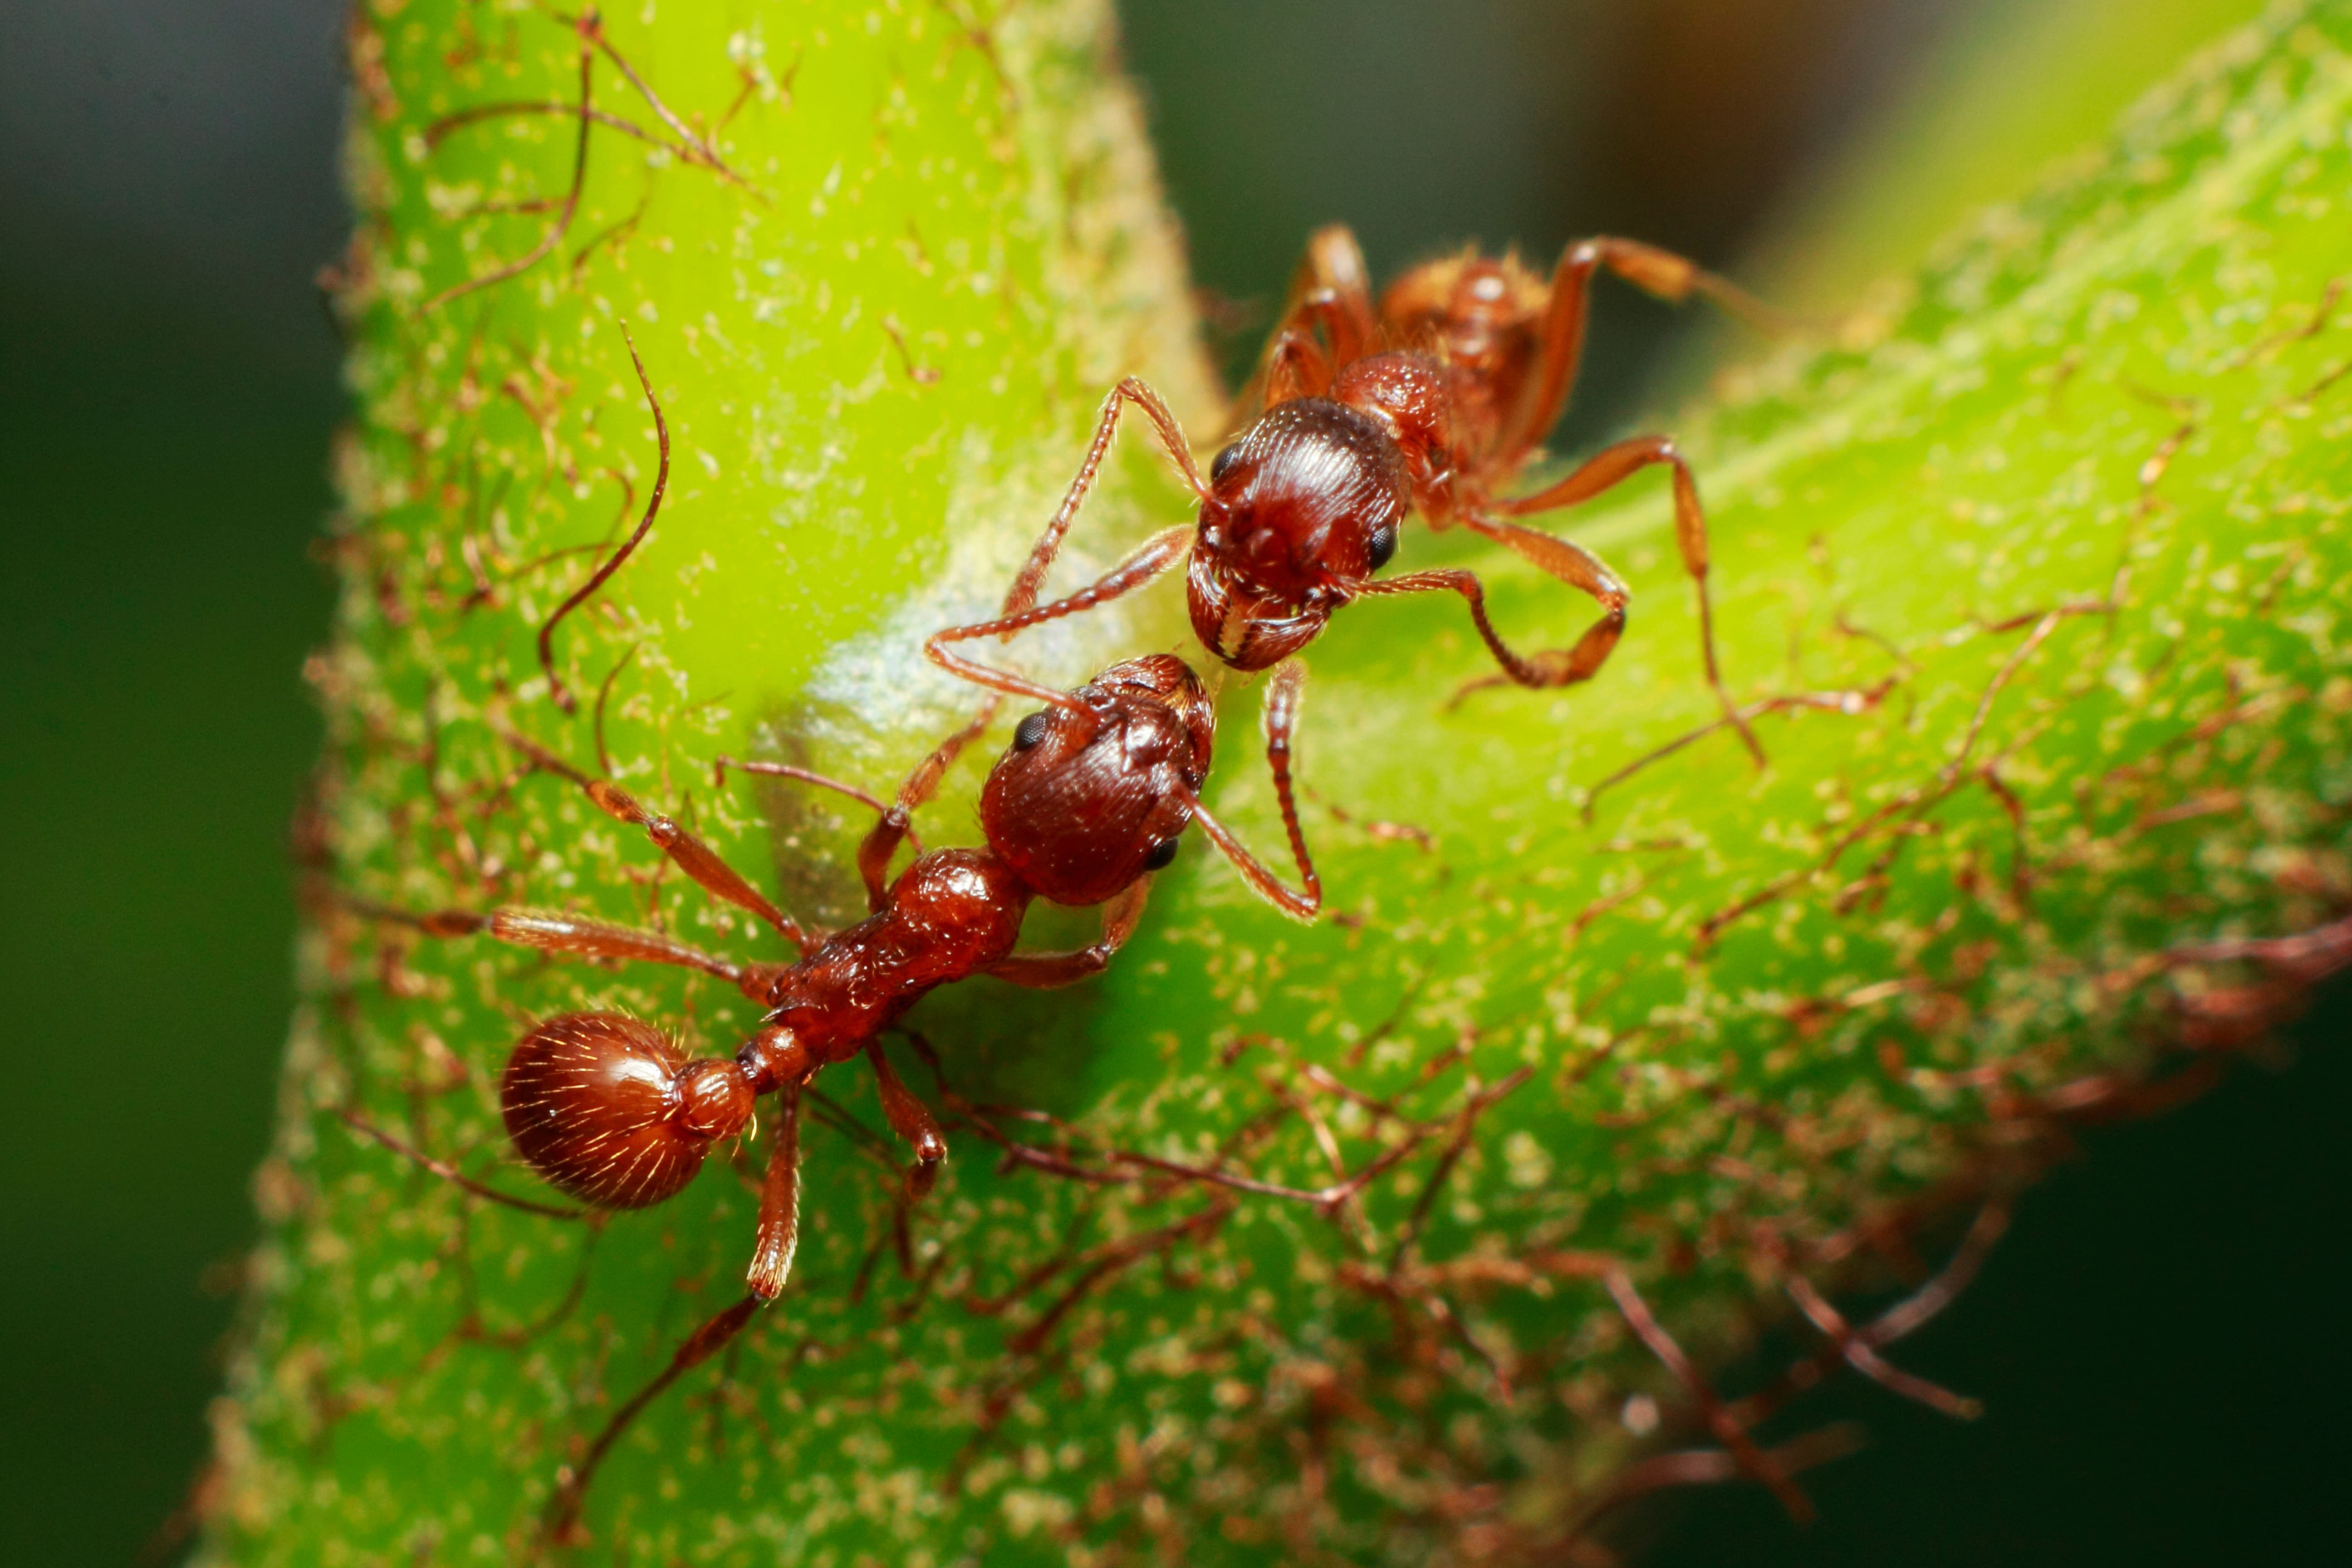 Les fourmis font partie des insectes sociaux, une colonie de fourmis est ainsi composée d'une multitude d'individus qui coopèrent ensemble. © Jorge, Adobe Stock